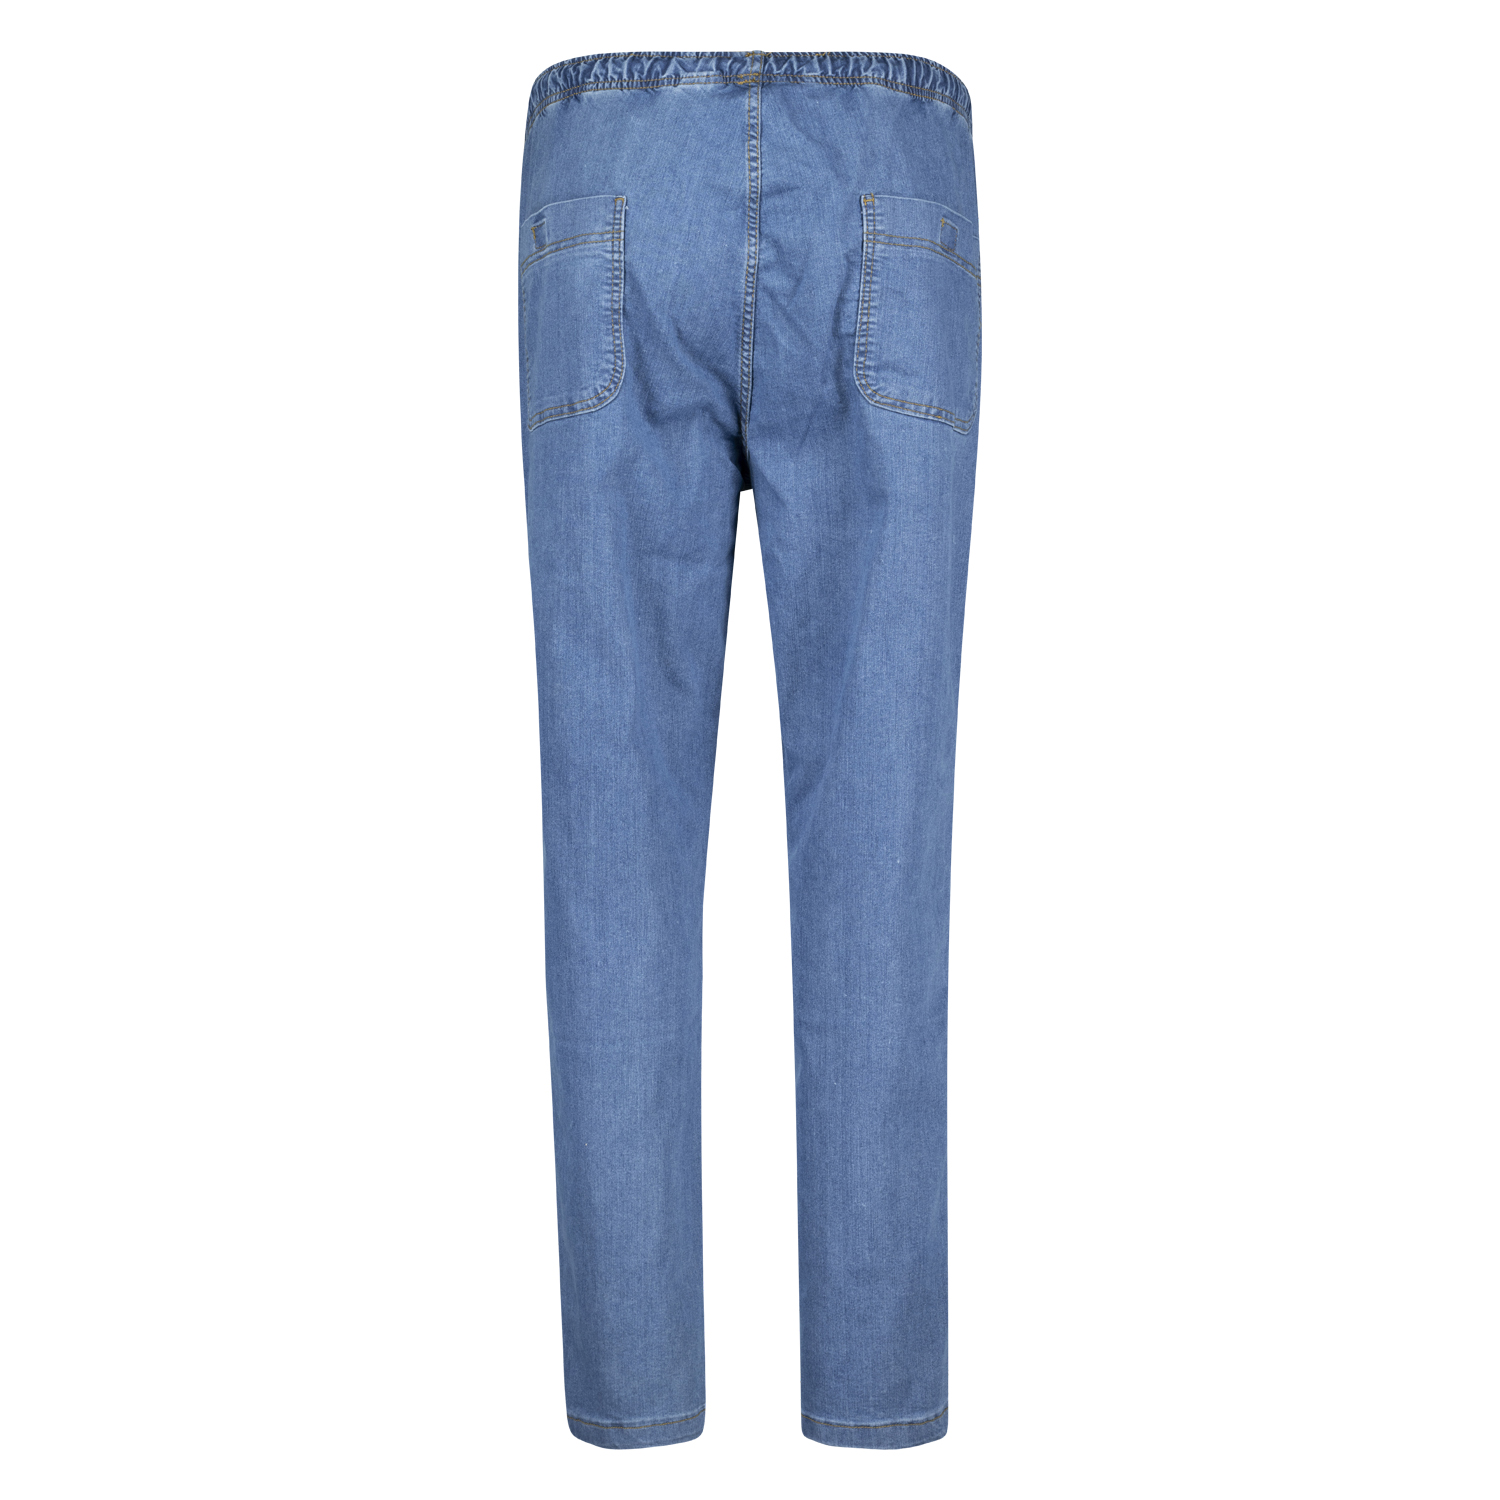 Hellblaue Jogging-Jeans von Abraxas in Übergrößen bis 12XL